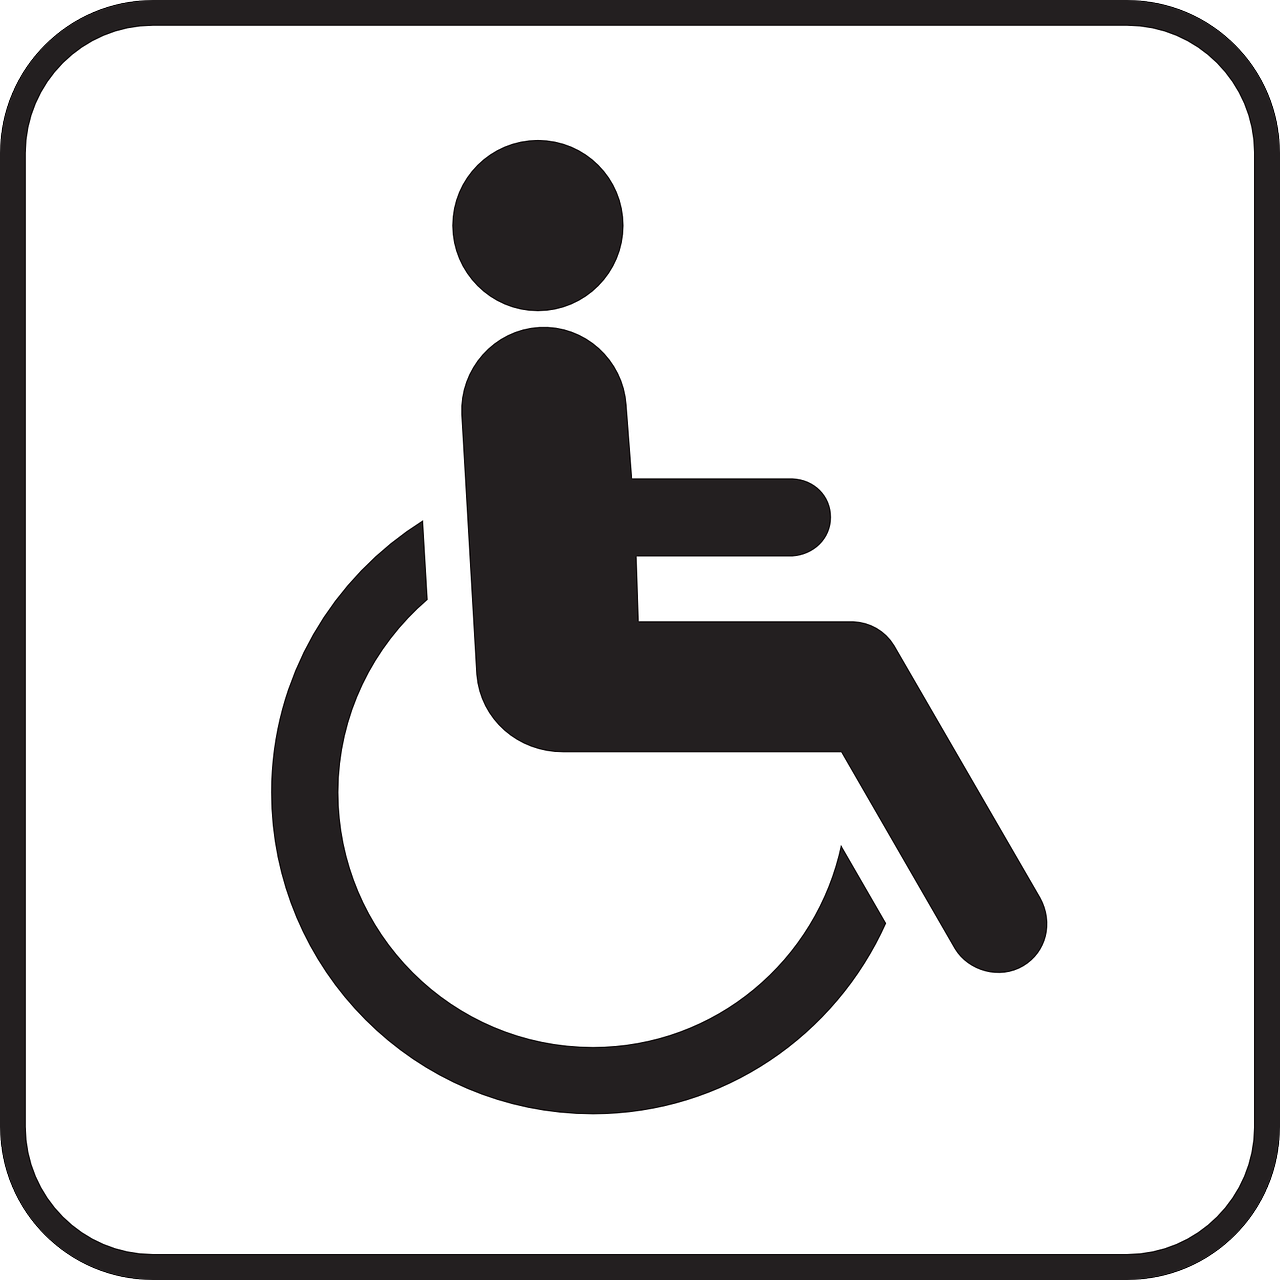 Zorg Maatschap Twente ervaringen instelling gehandicaptenzorg verstandelijk gehandicapten